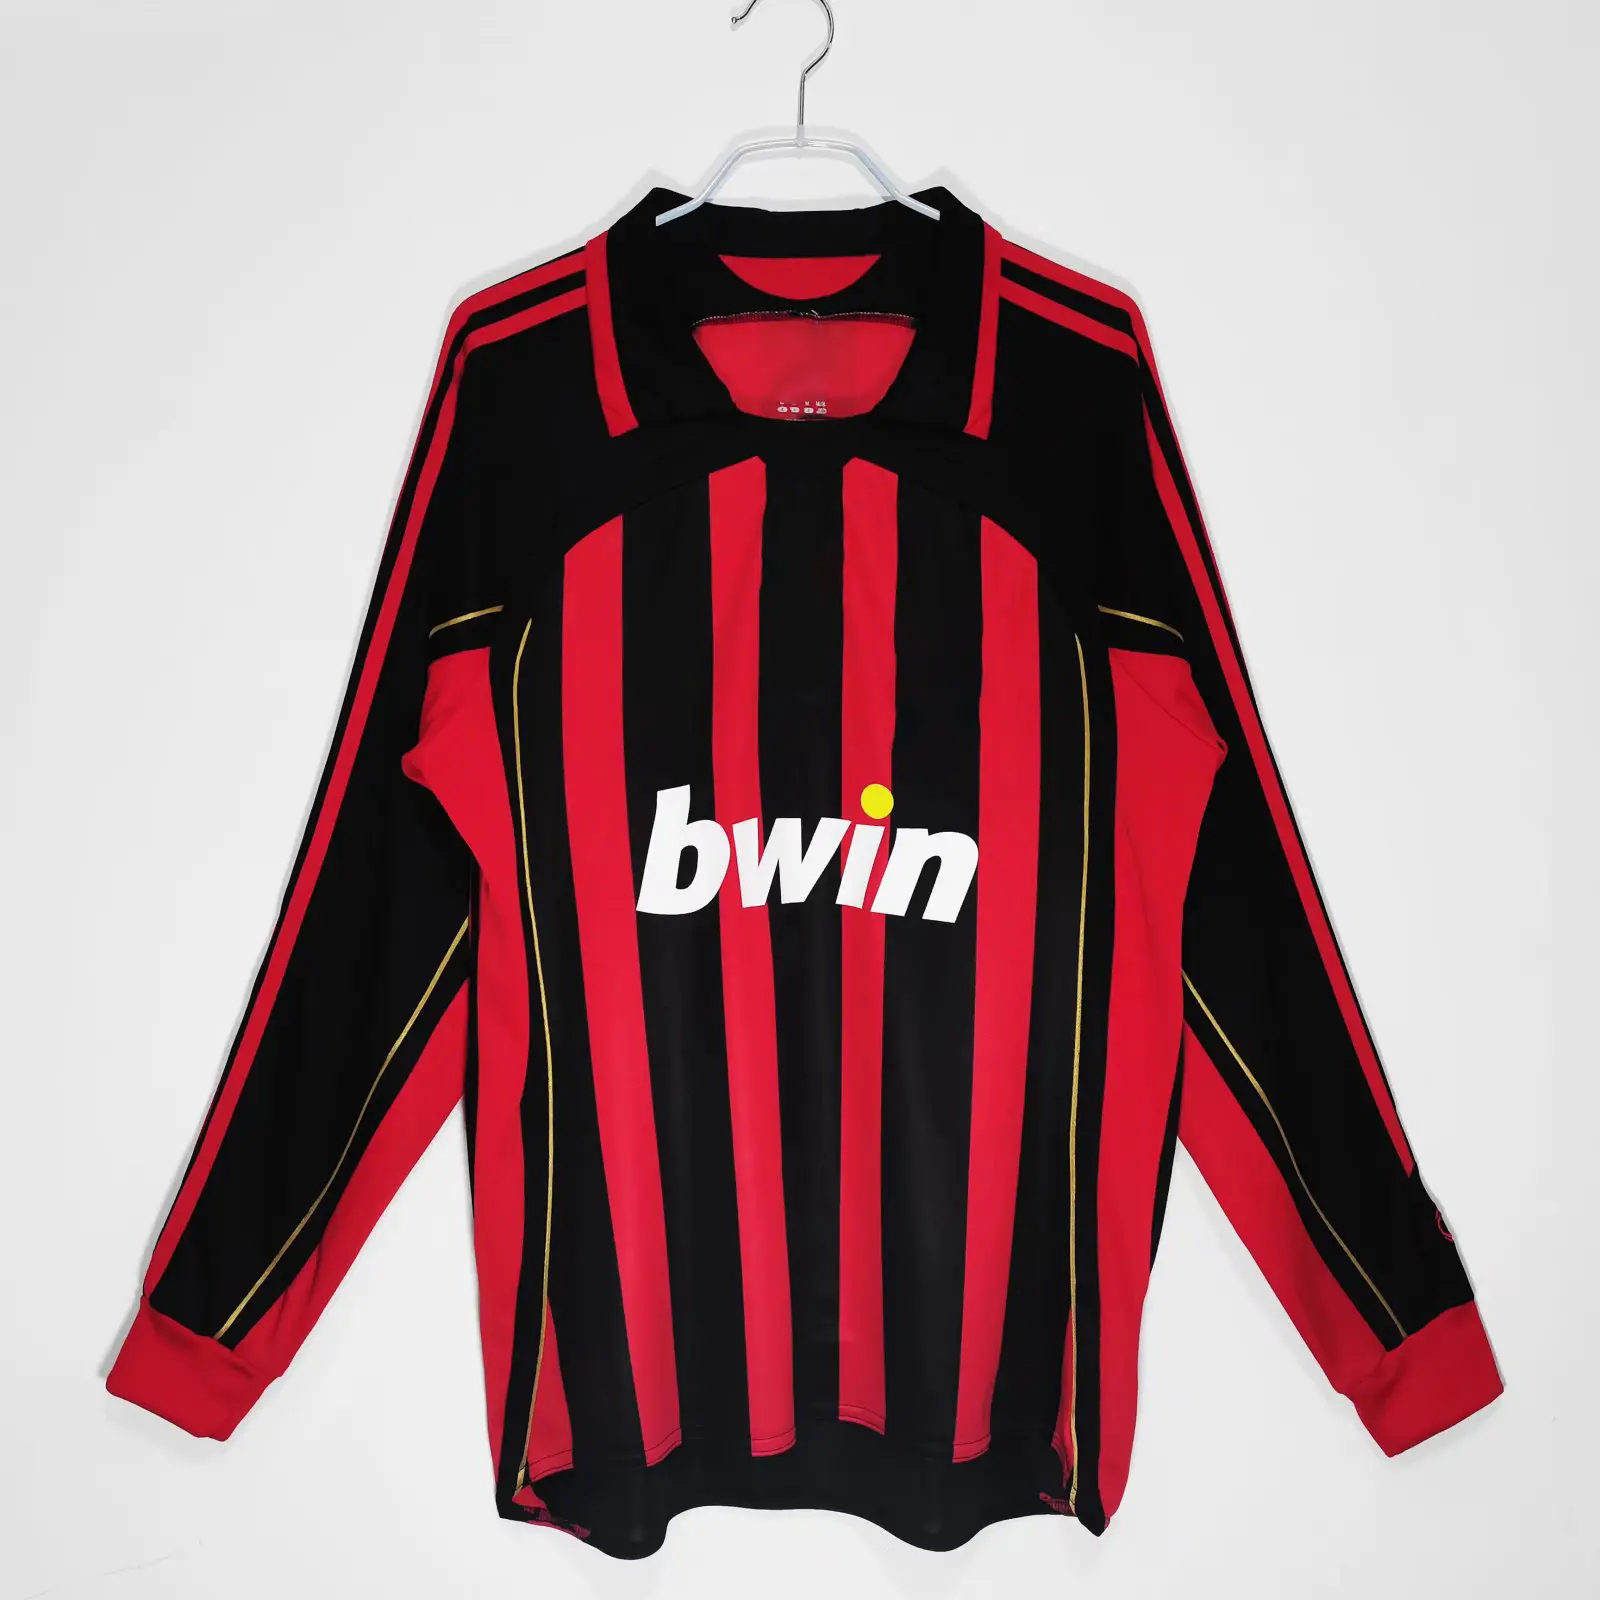 Maillot de football vintage Hot A Premium 2006-2007 Kaka logo C personnalisé et maillot rétro numérique Milan Inzaghi